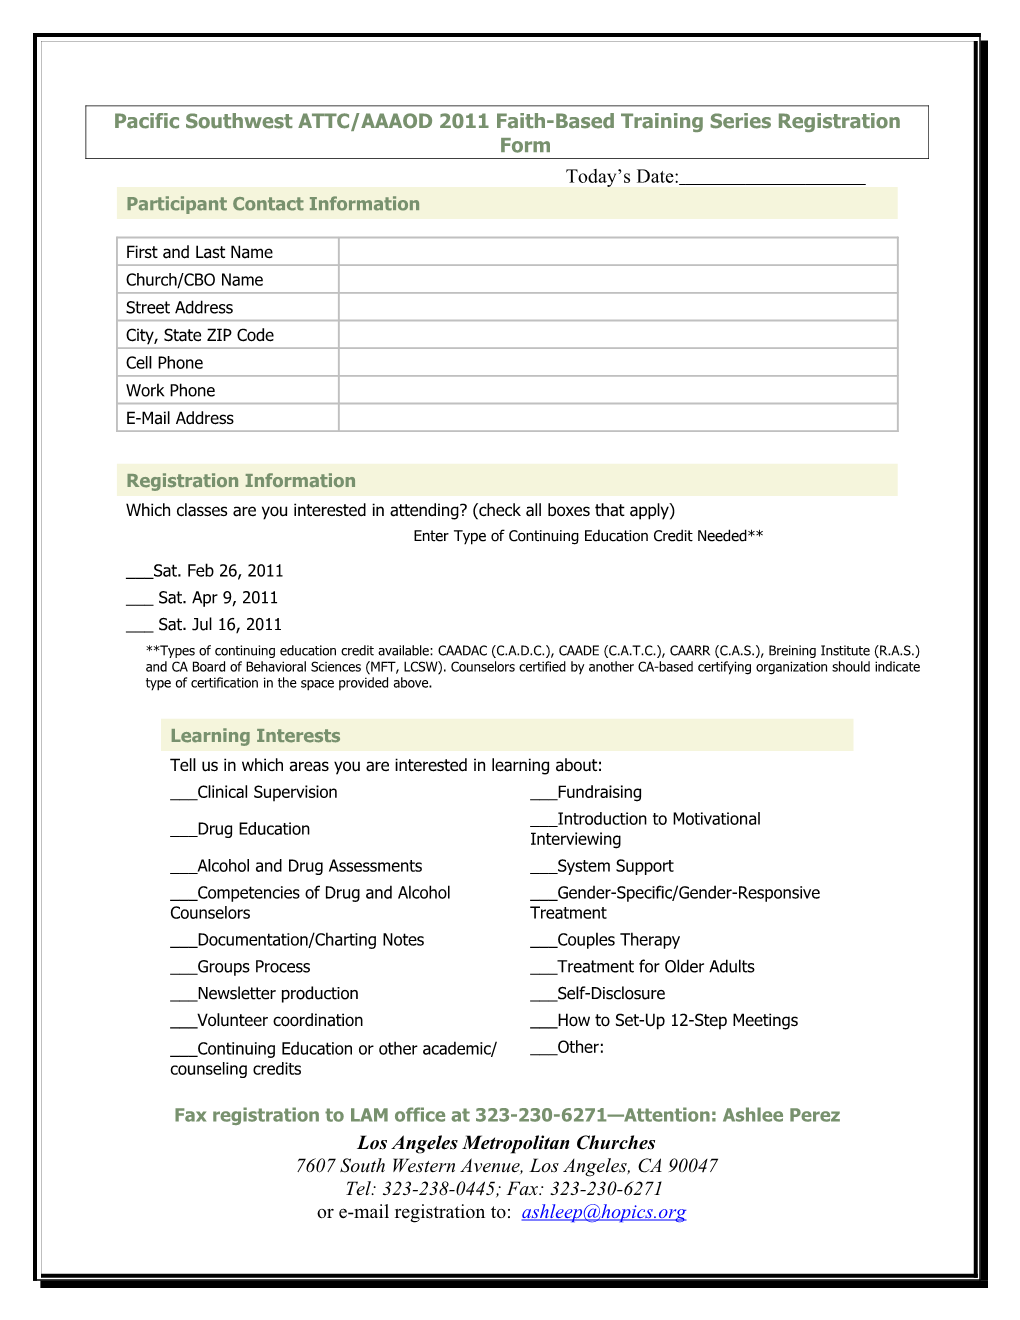 PSATTC/AAAOD Faith Based Training Registration 2009